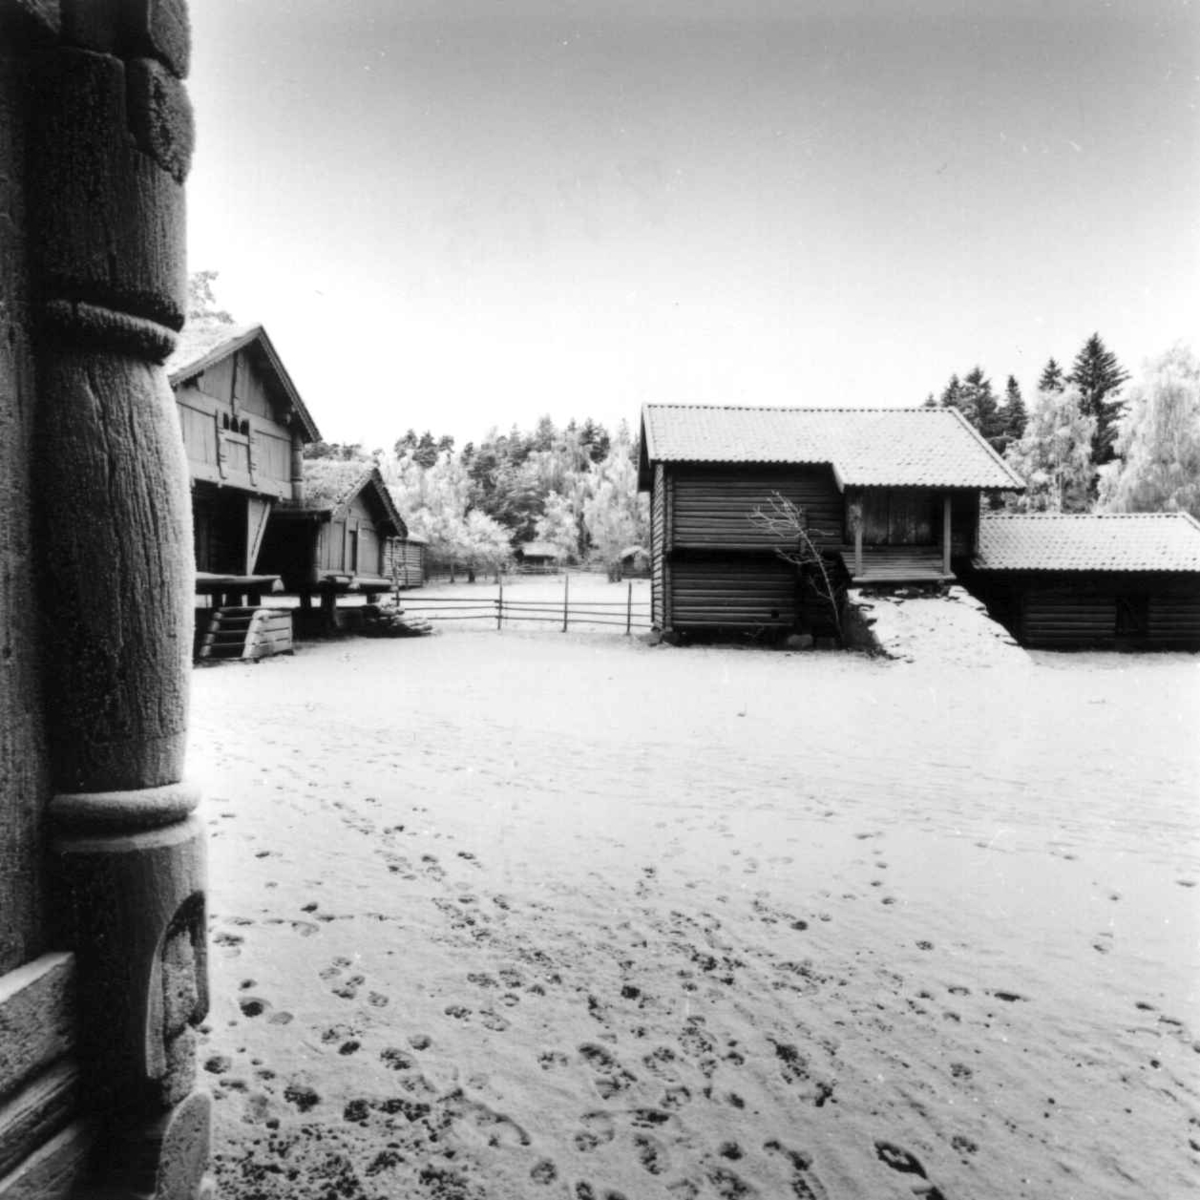 Telemarkstunet på Norsk folkemuseum. Stall med sauefjøs fra Jørgedal til høyre. Fotografert i 1965/ 66, sansynligvis med vidvinkel som gir et feilaktig inntrykk av tunet.